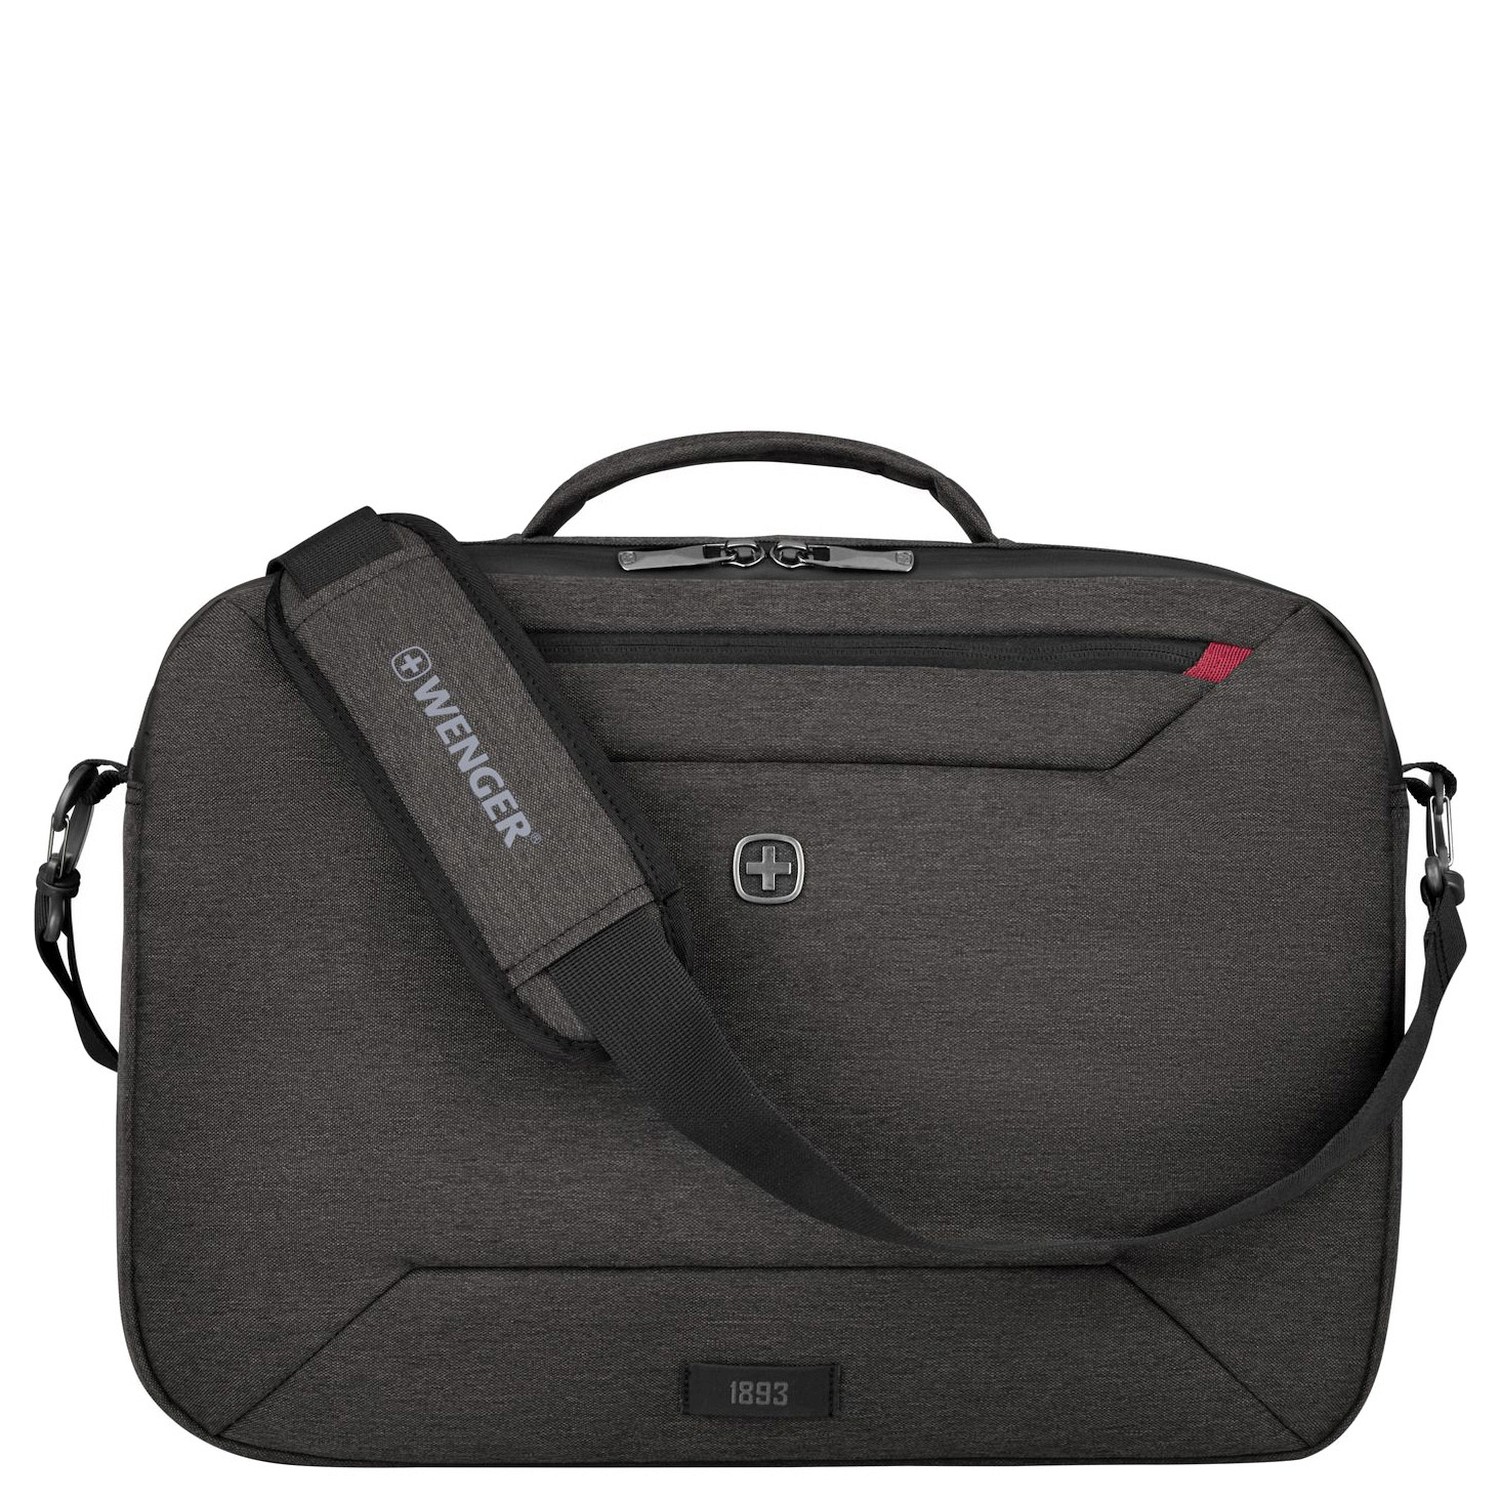 Сумка для ноутбука Wenger MX Commute 16 44 cm, цвет heather grey сумка для ноутбука wenger reload 16 44 cm черный